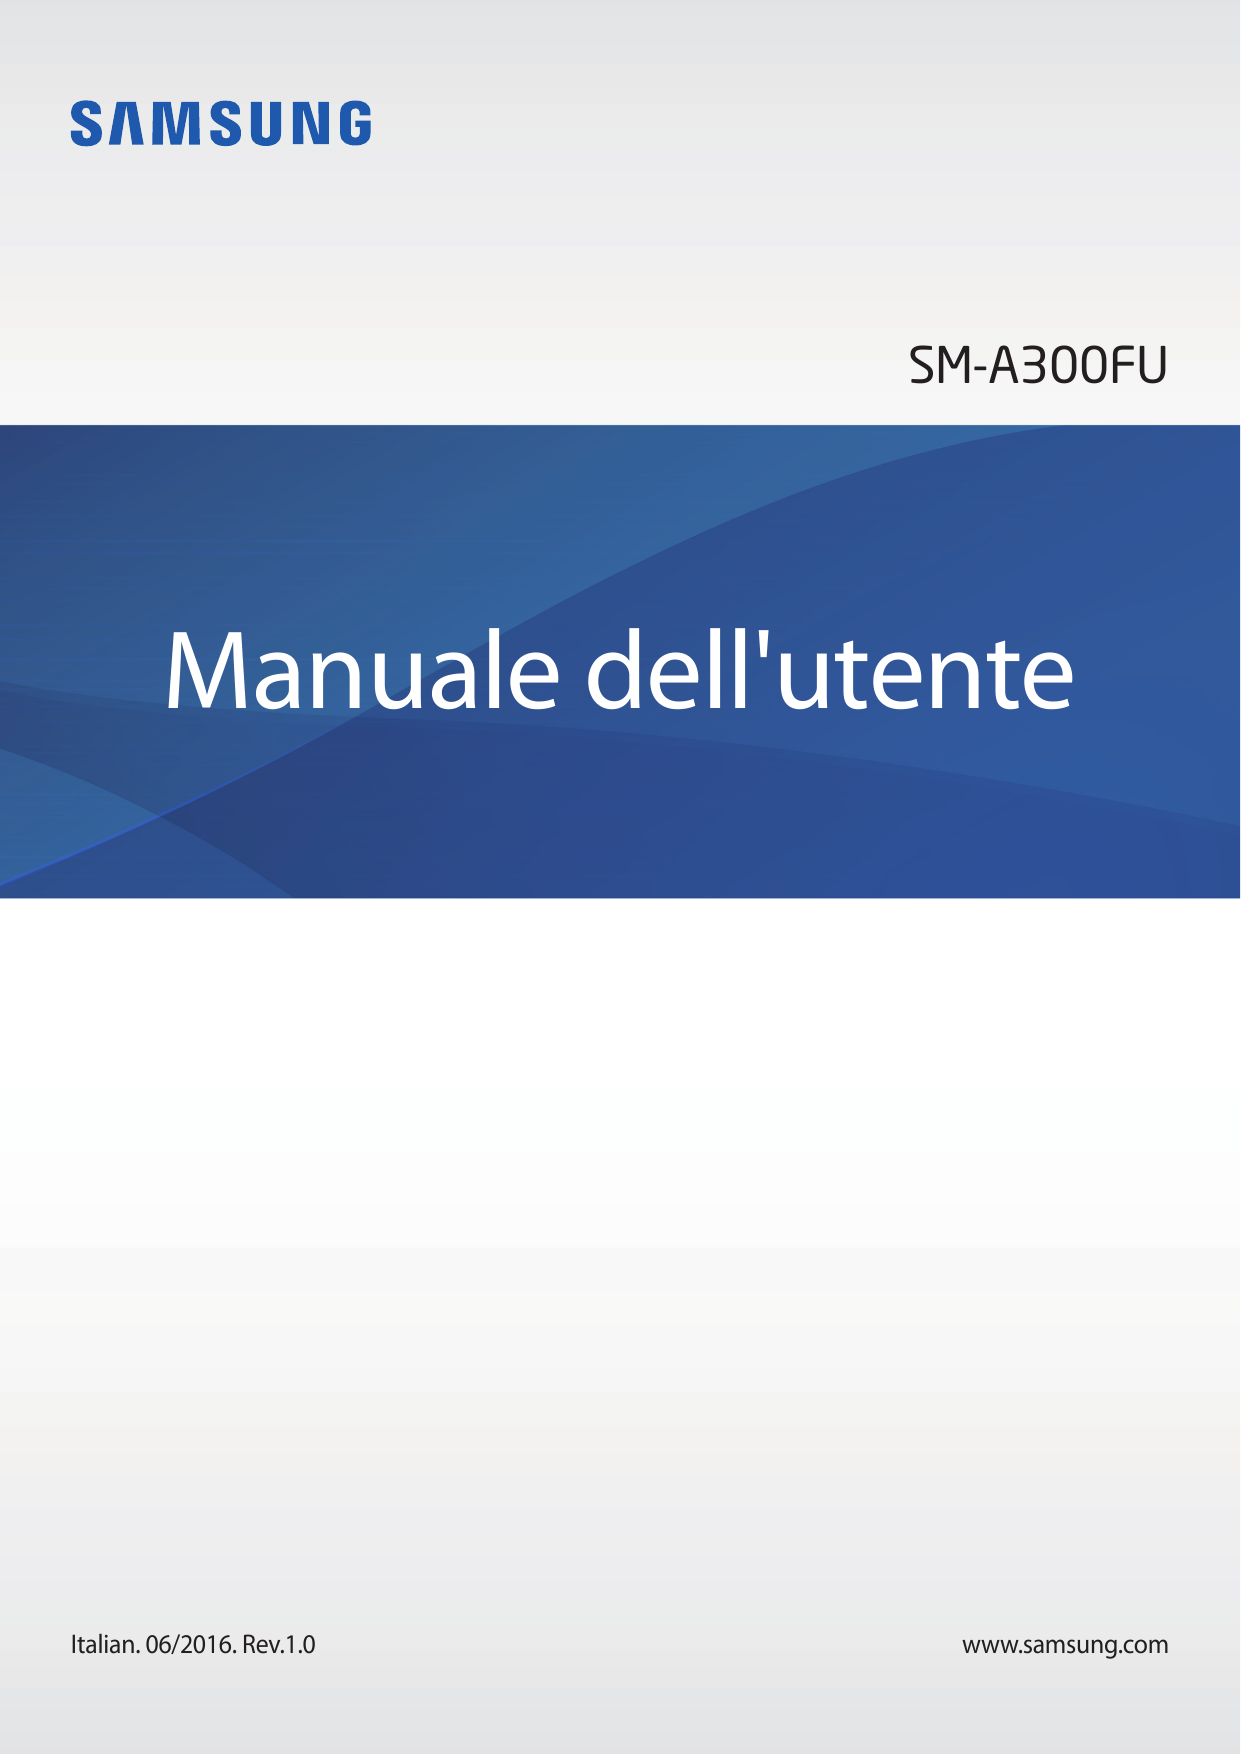 SM-A300FUManuale dell'utenteItalian. 06/2016. Rev.1.0www.samsung.com